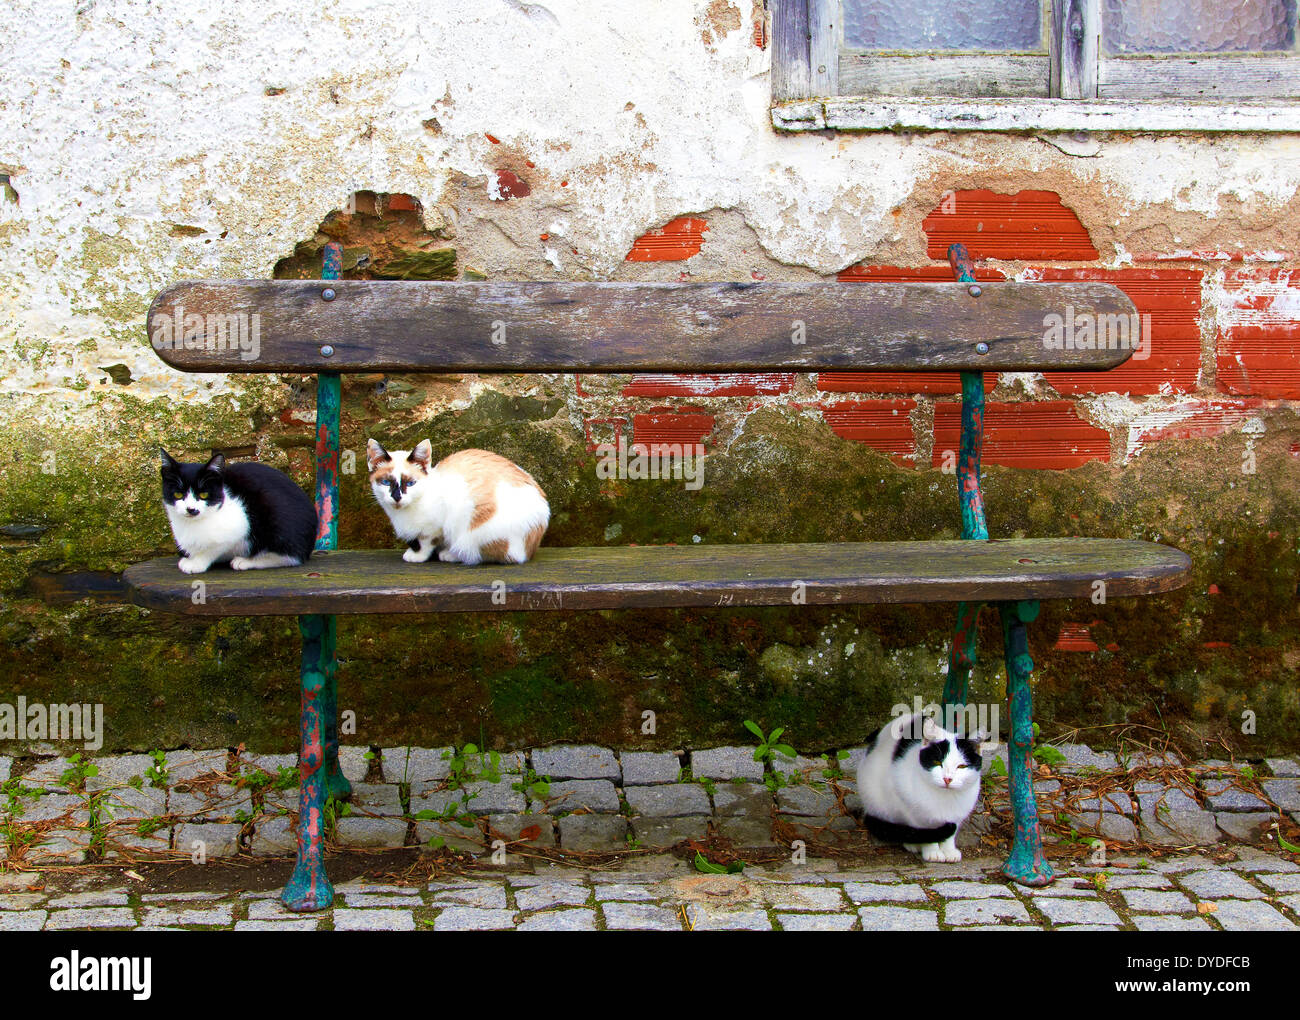 Trois chats complaisamment que pose pour la caméra dans une ruelle tout à fait dans une partie reculée du nord du Portugal. Banque D'Images